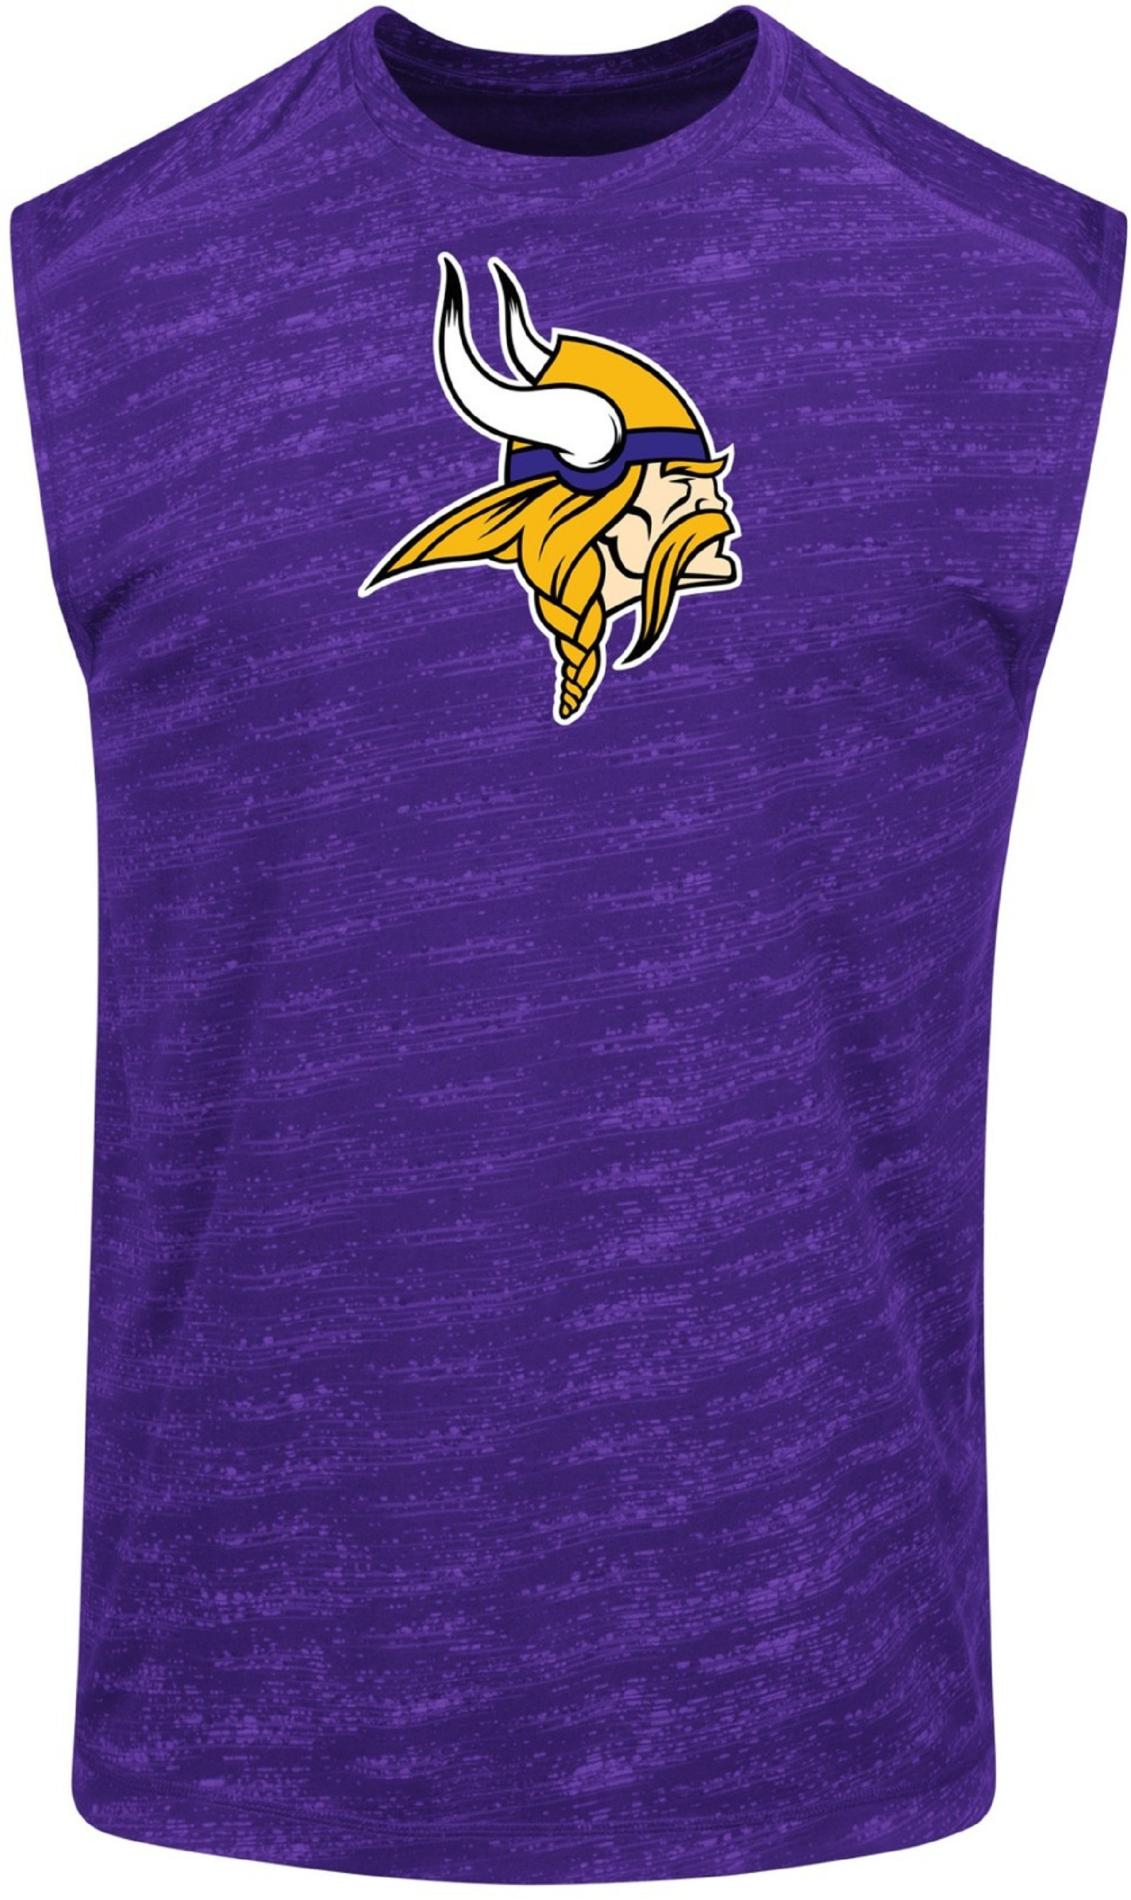 NFL Men's Muscle T-Shirt - Minnesota Vikings